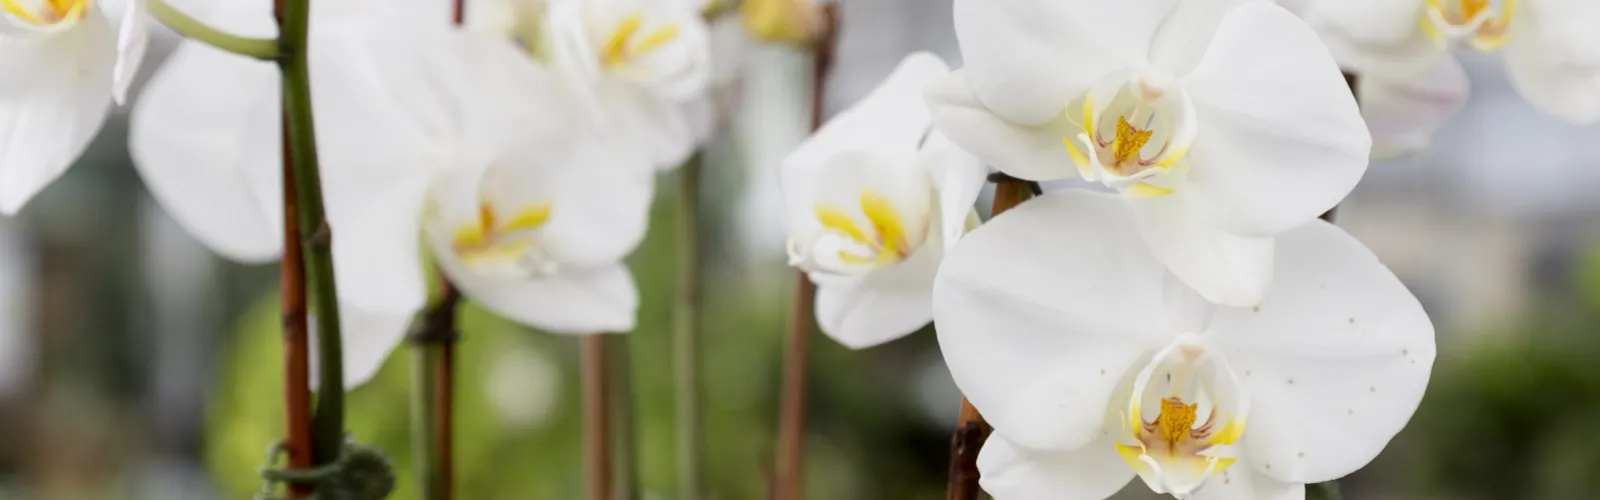 Blooming white phalaenopsis flower